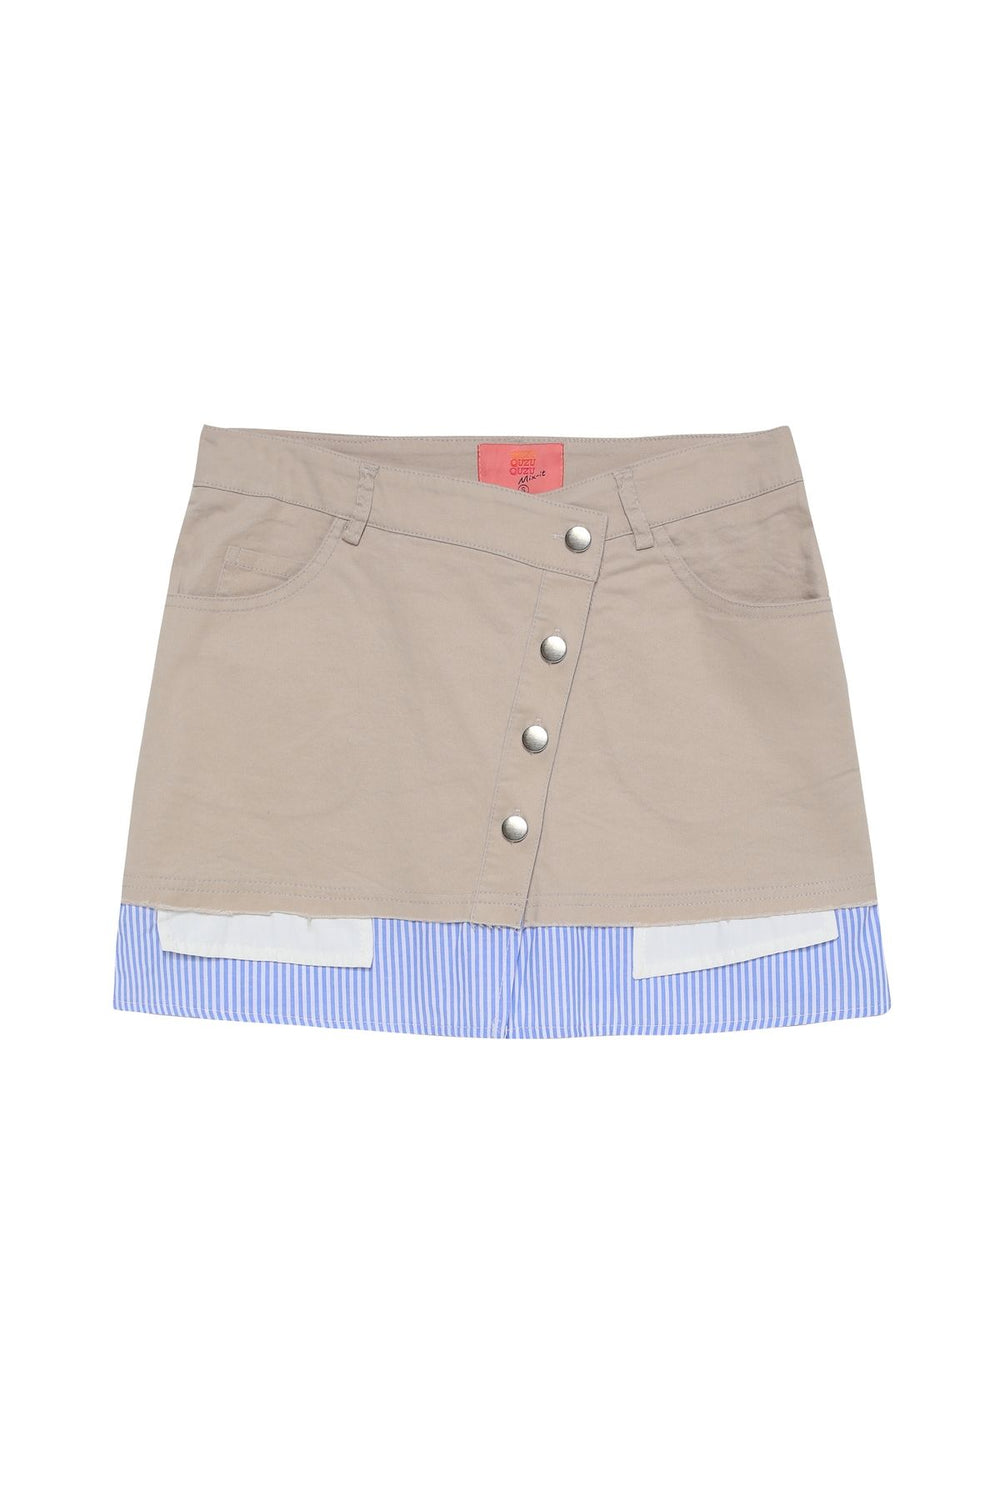 Match Detailed Buttoned Skirt Beige